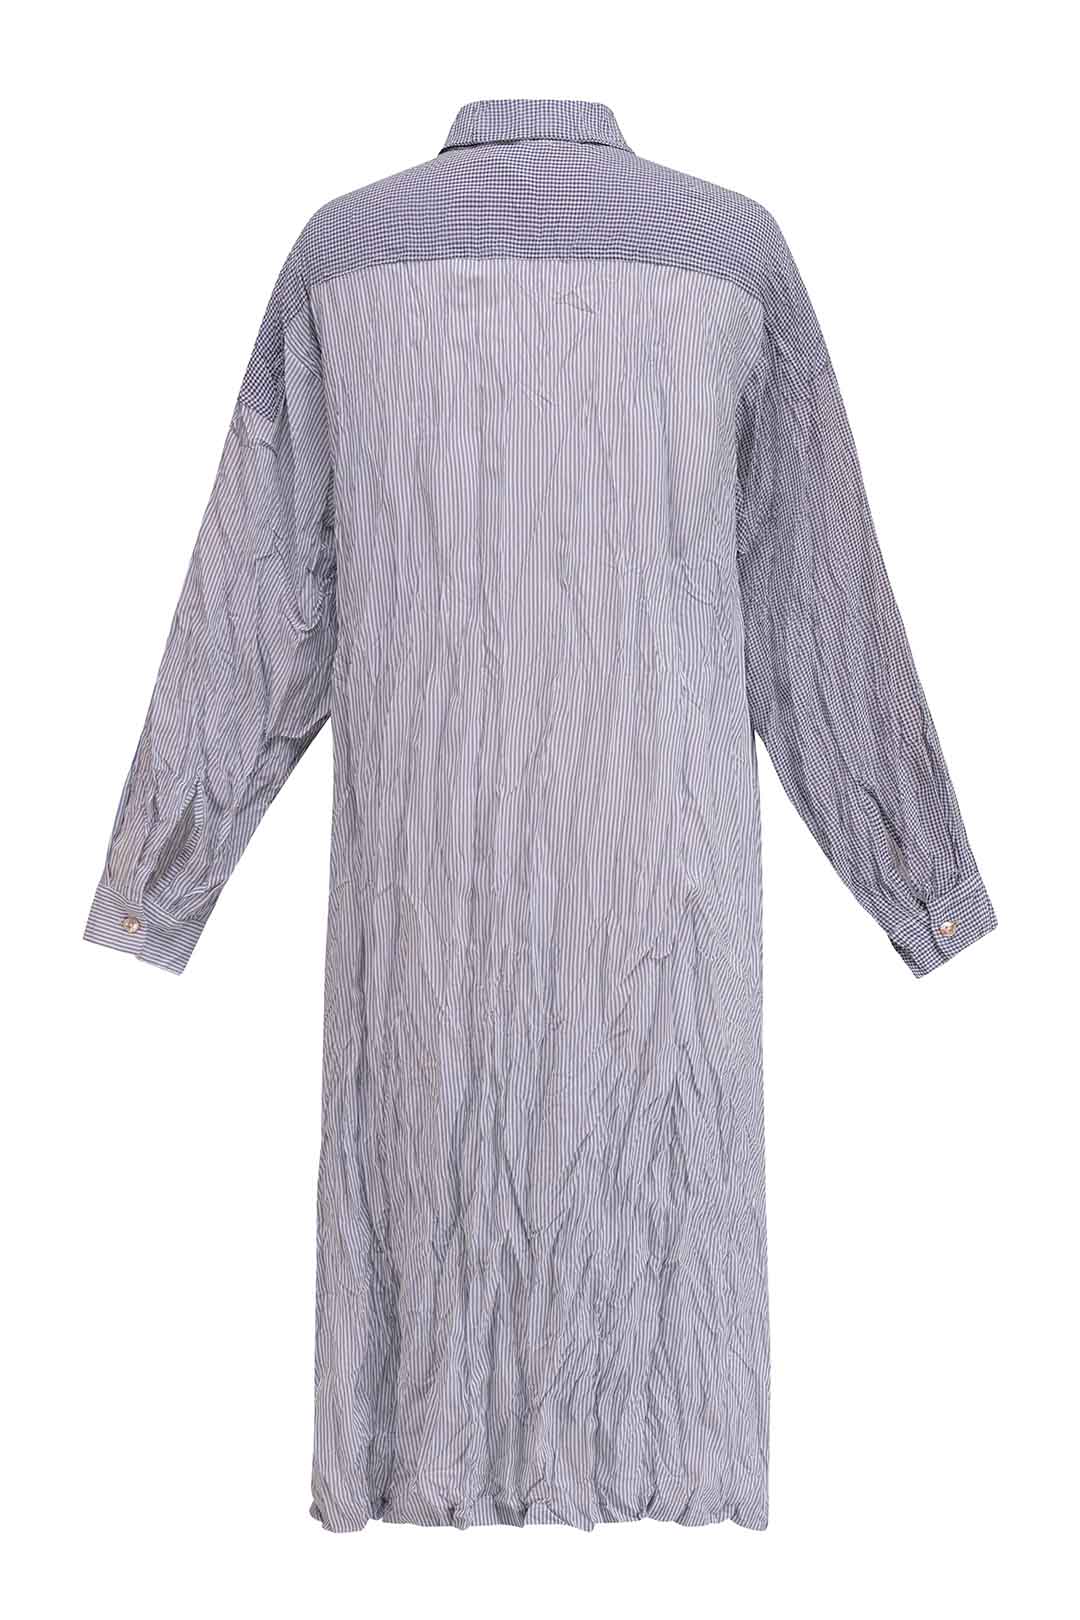 sartorial tunic shirtdress gingham